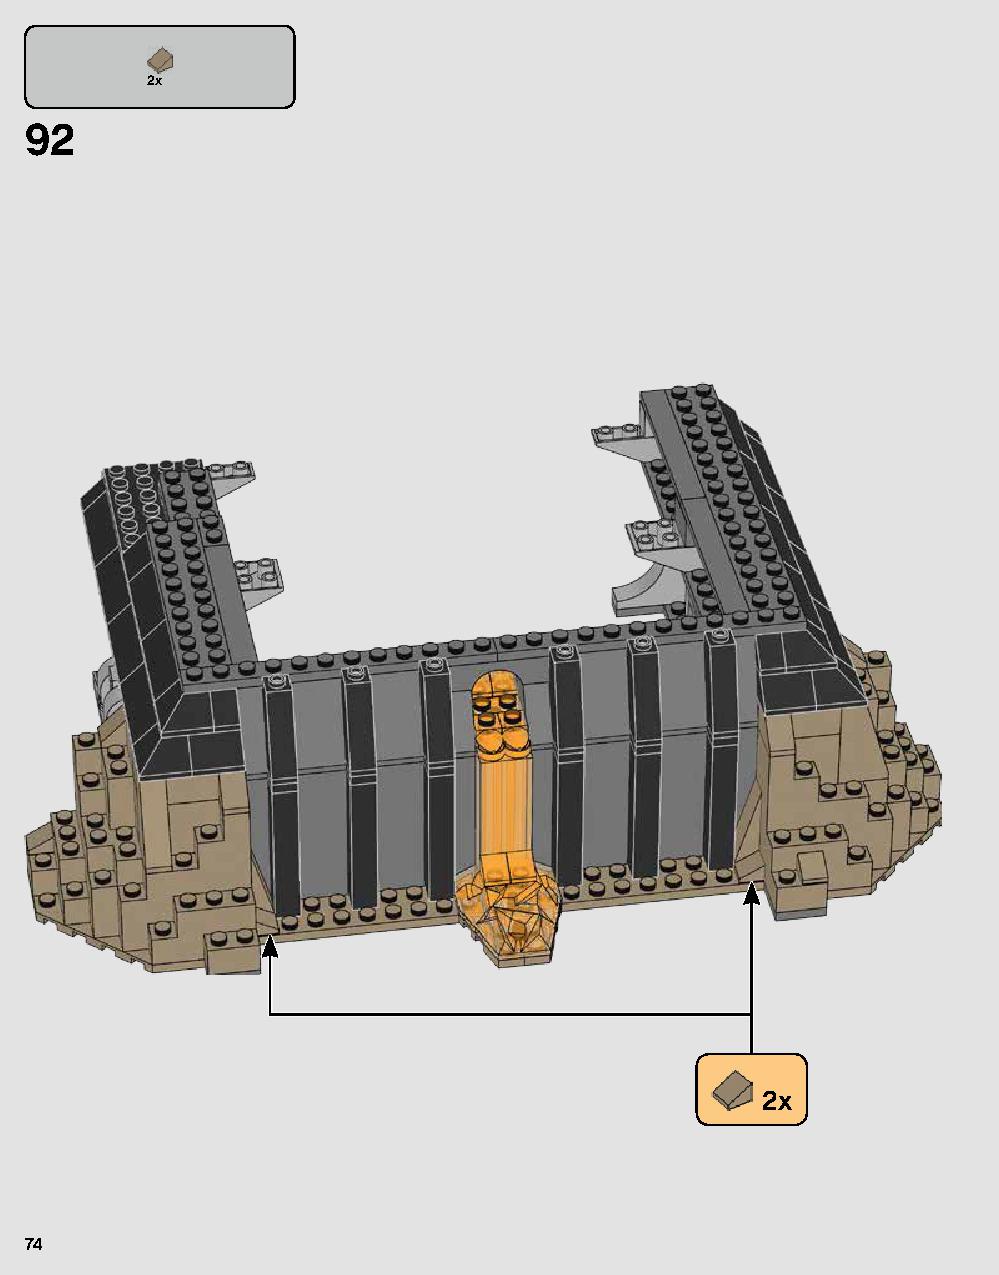 ダース・ベイダーの城 75251 レゴの商品情報 レゴの説明書・組立方法 74 page